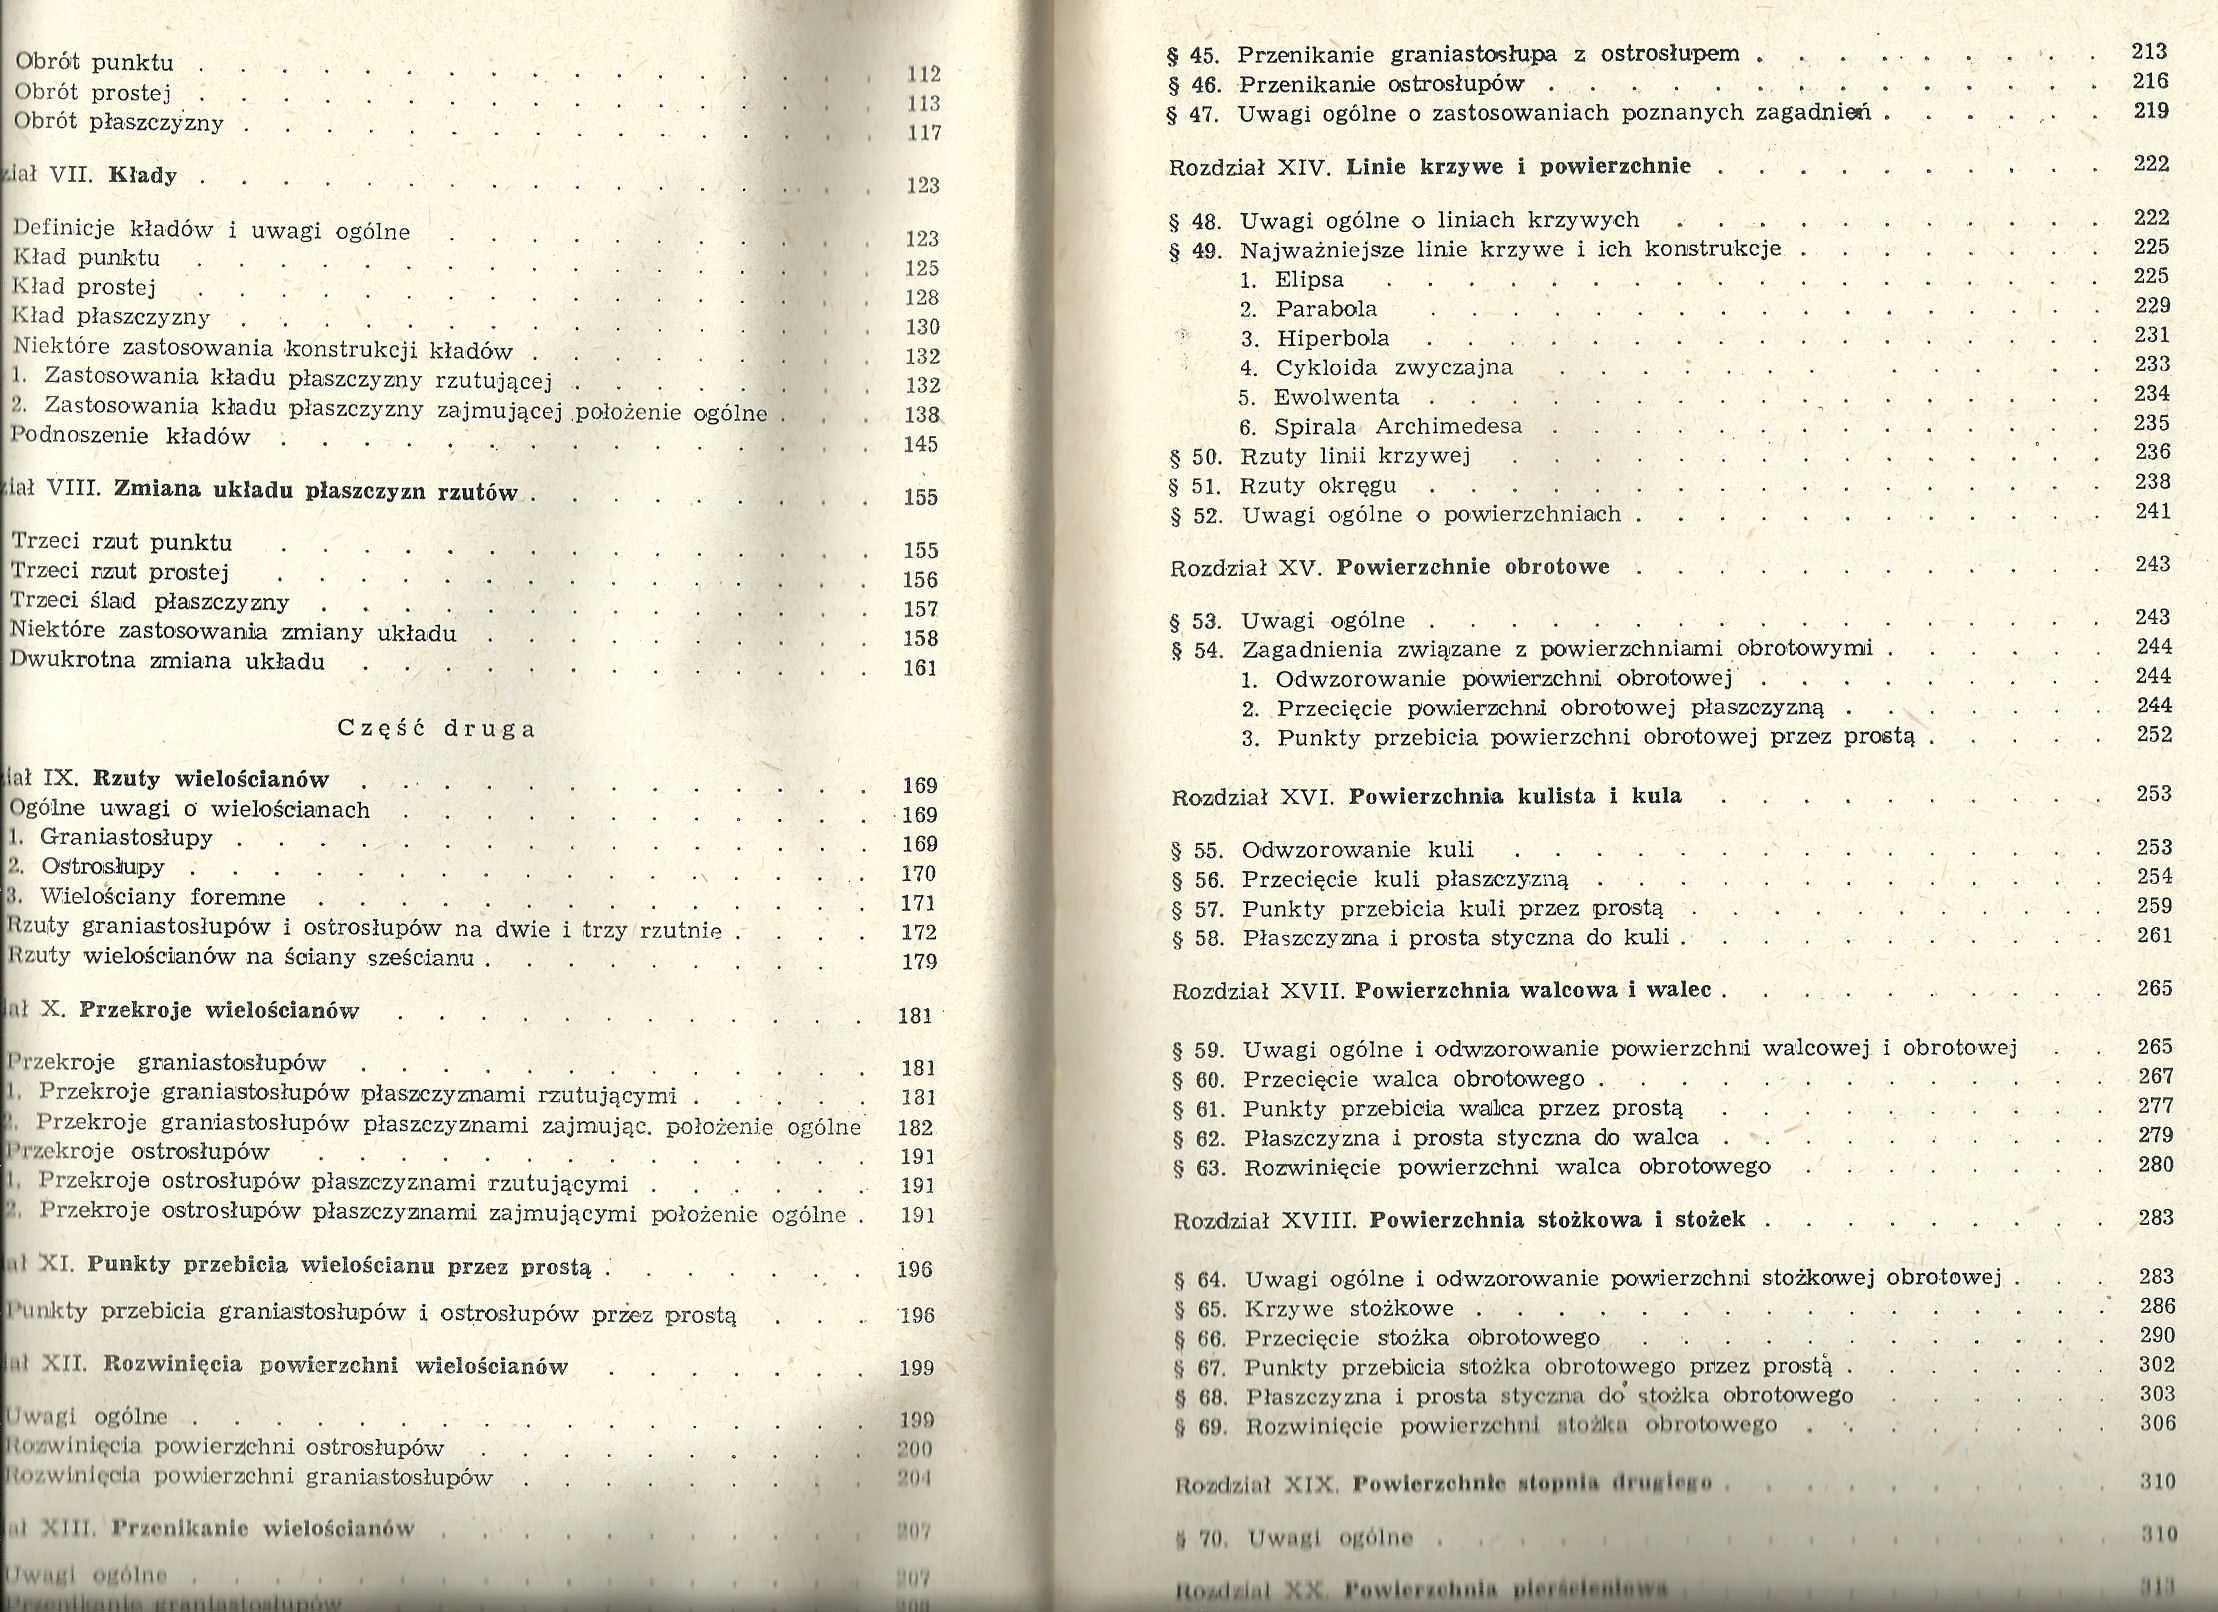 Książki "Geometria wykreślna", T. Rachwał Tom I i II, J. Waligórski